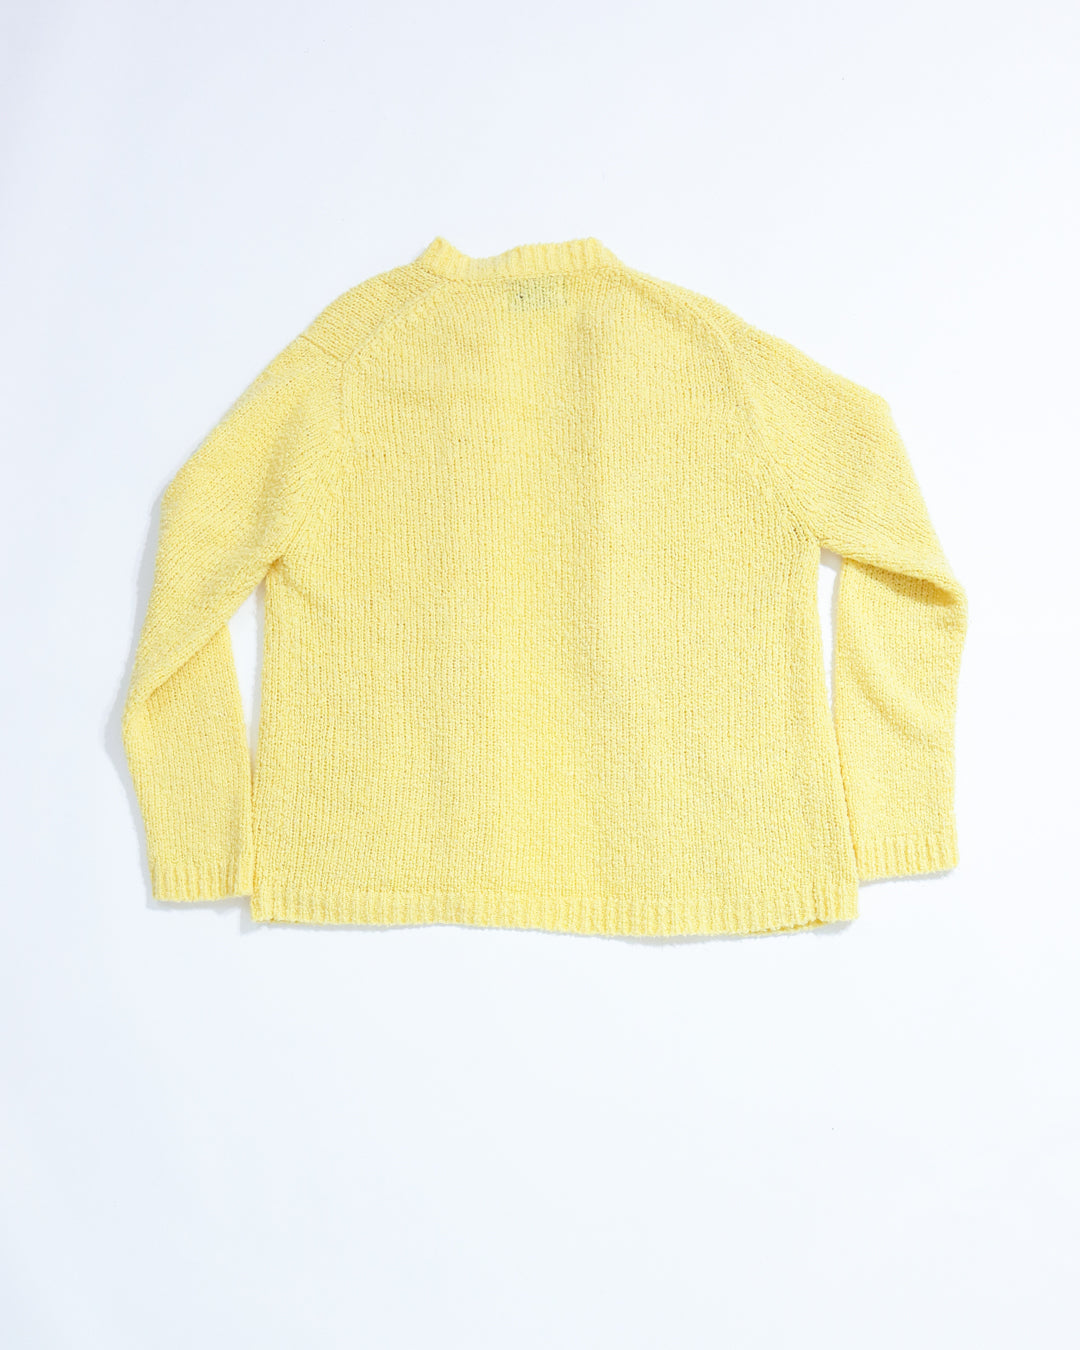 Blueprint Varsity Cardigan - Yellow (Medium)